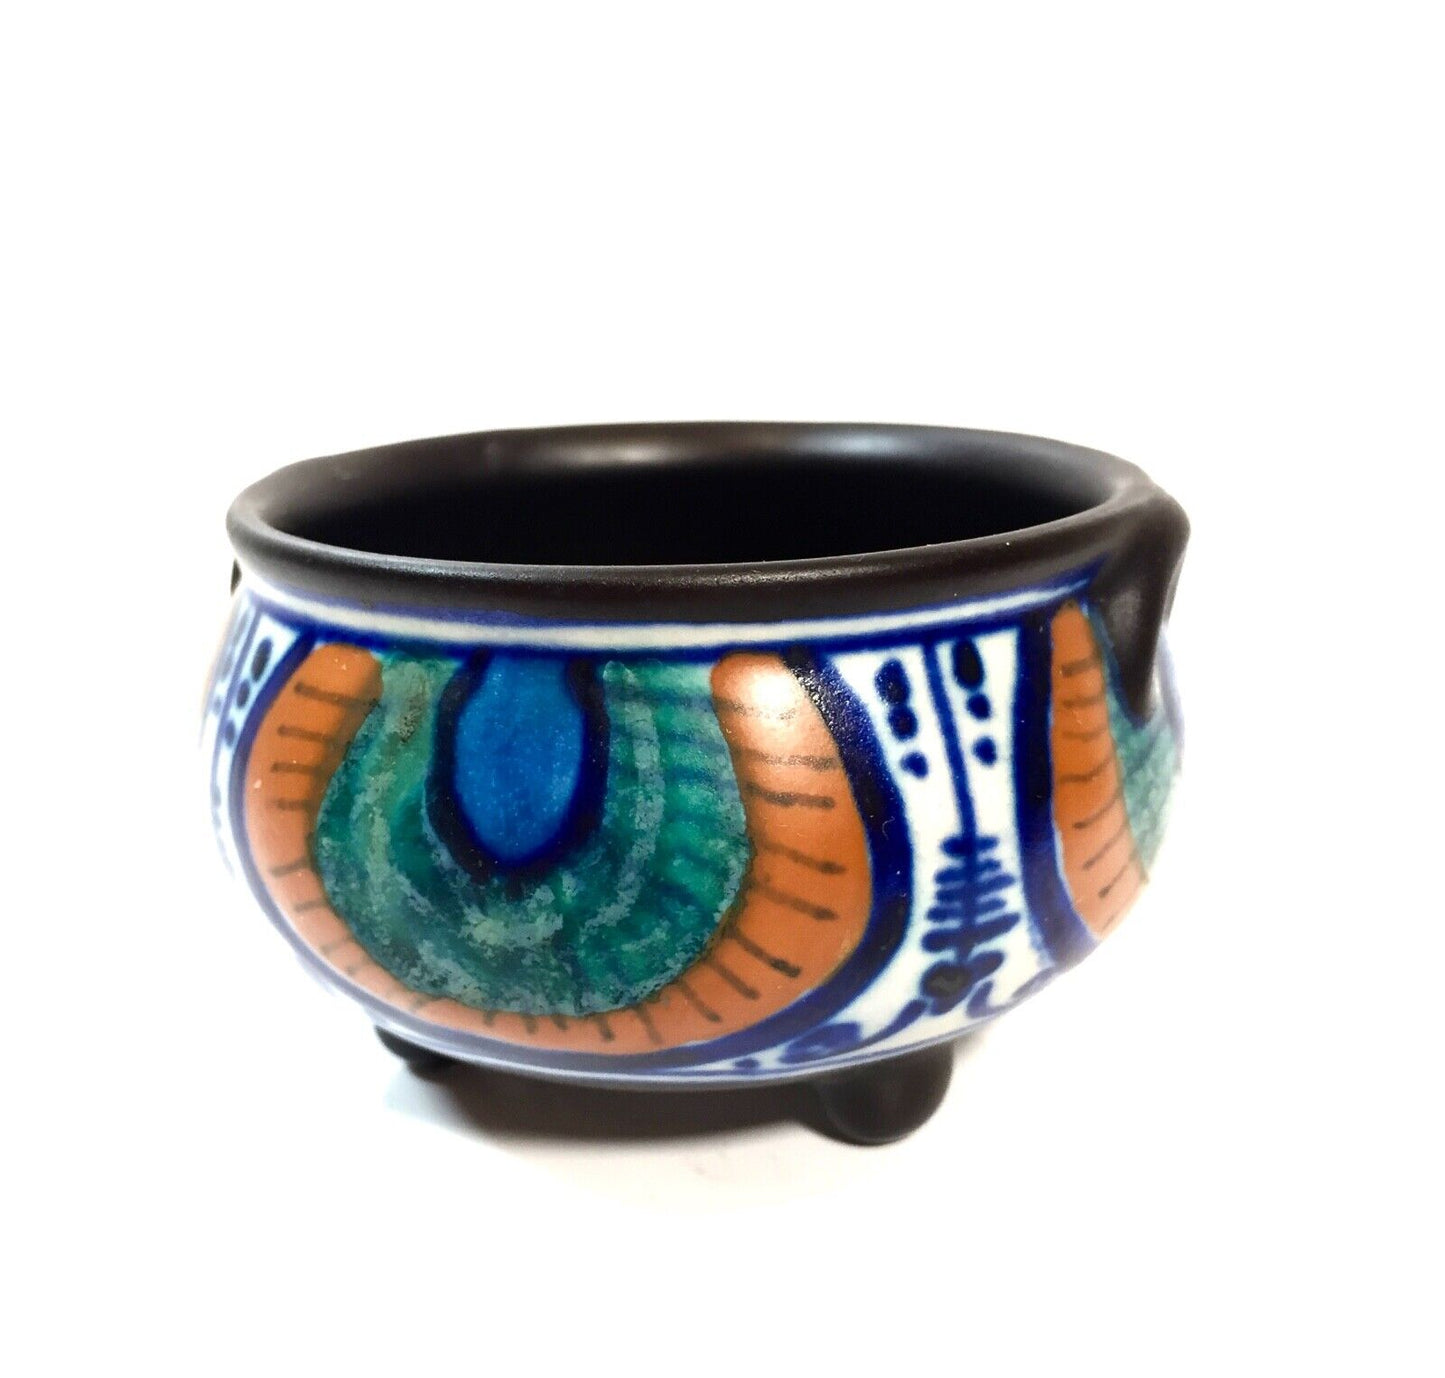 Antique Art Deco Dutch Gouda Pottery Vase / Bowl / Jug / Blue & Orange